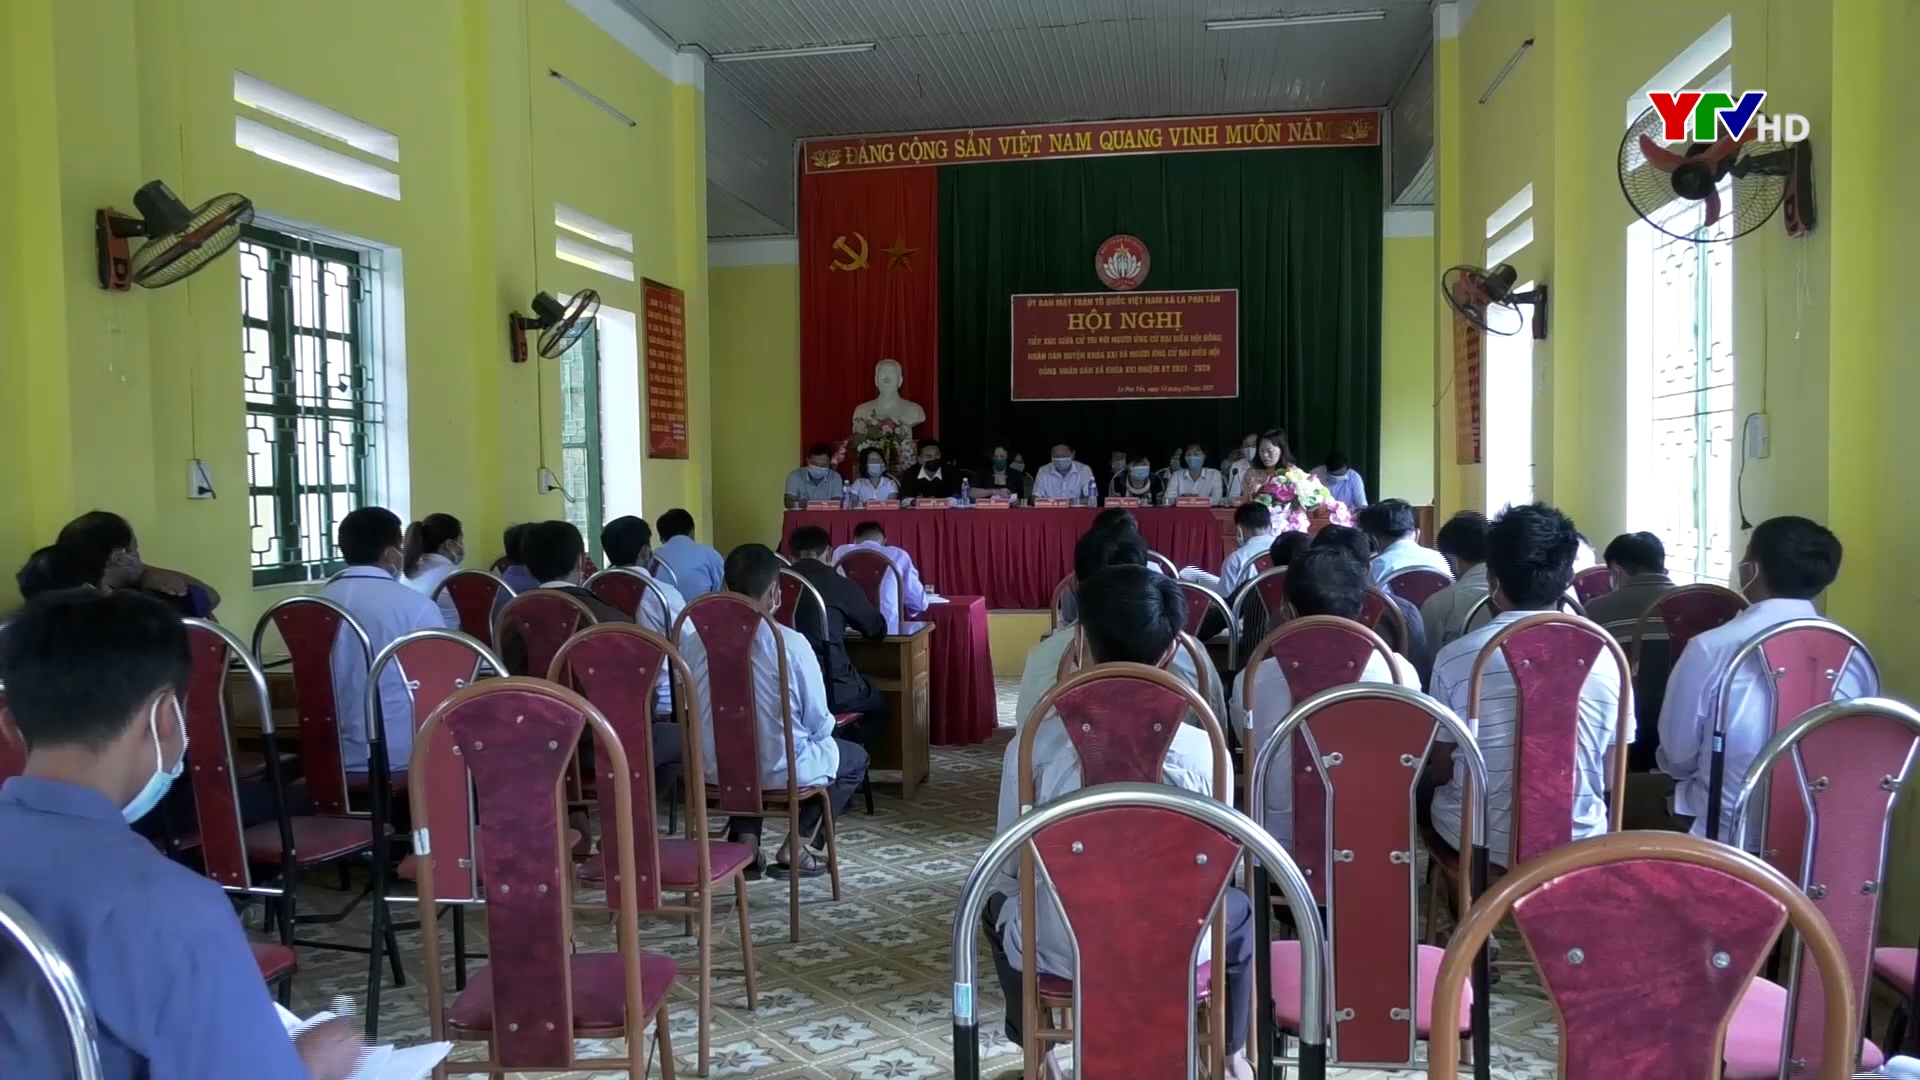 Các ứng cử viên đại biểu HĐND huyện Mù cang Chải tiếp xúc cử tri xã La Pán Tẩn và Dế Xu Phình